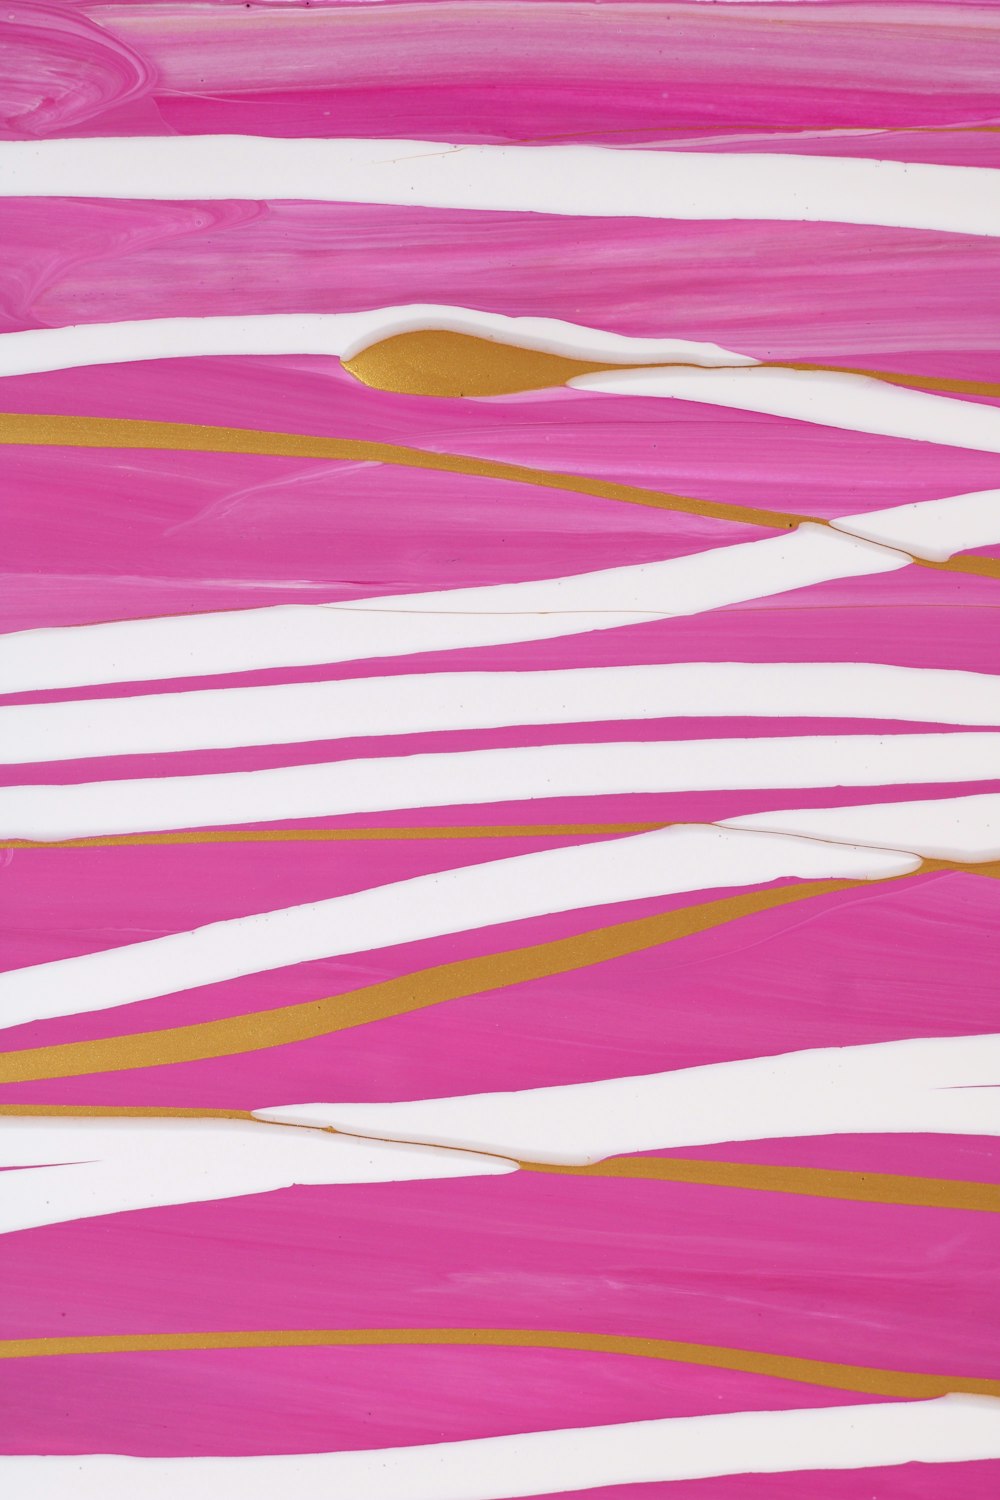 Una pintura rosa y blanca con líneas doradas